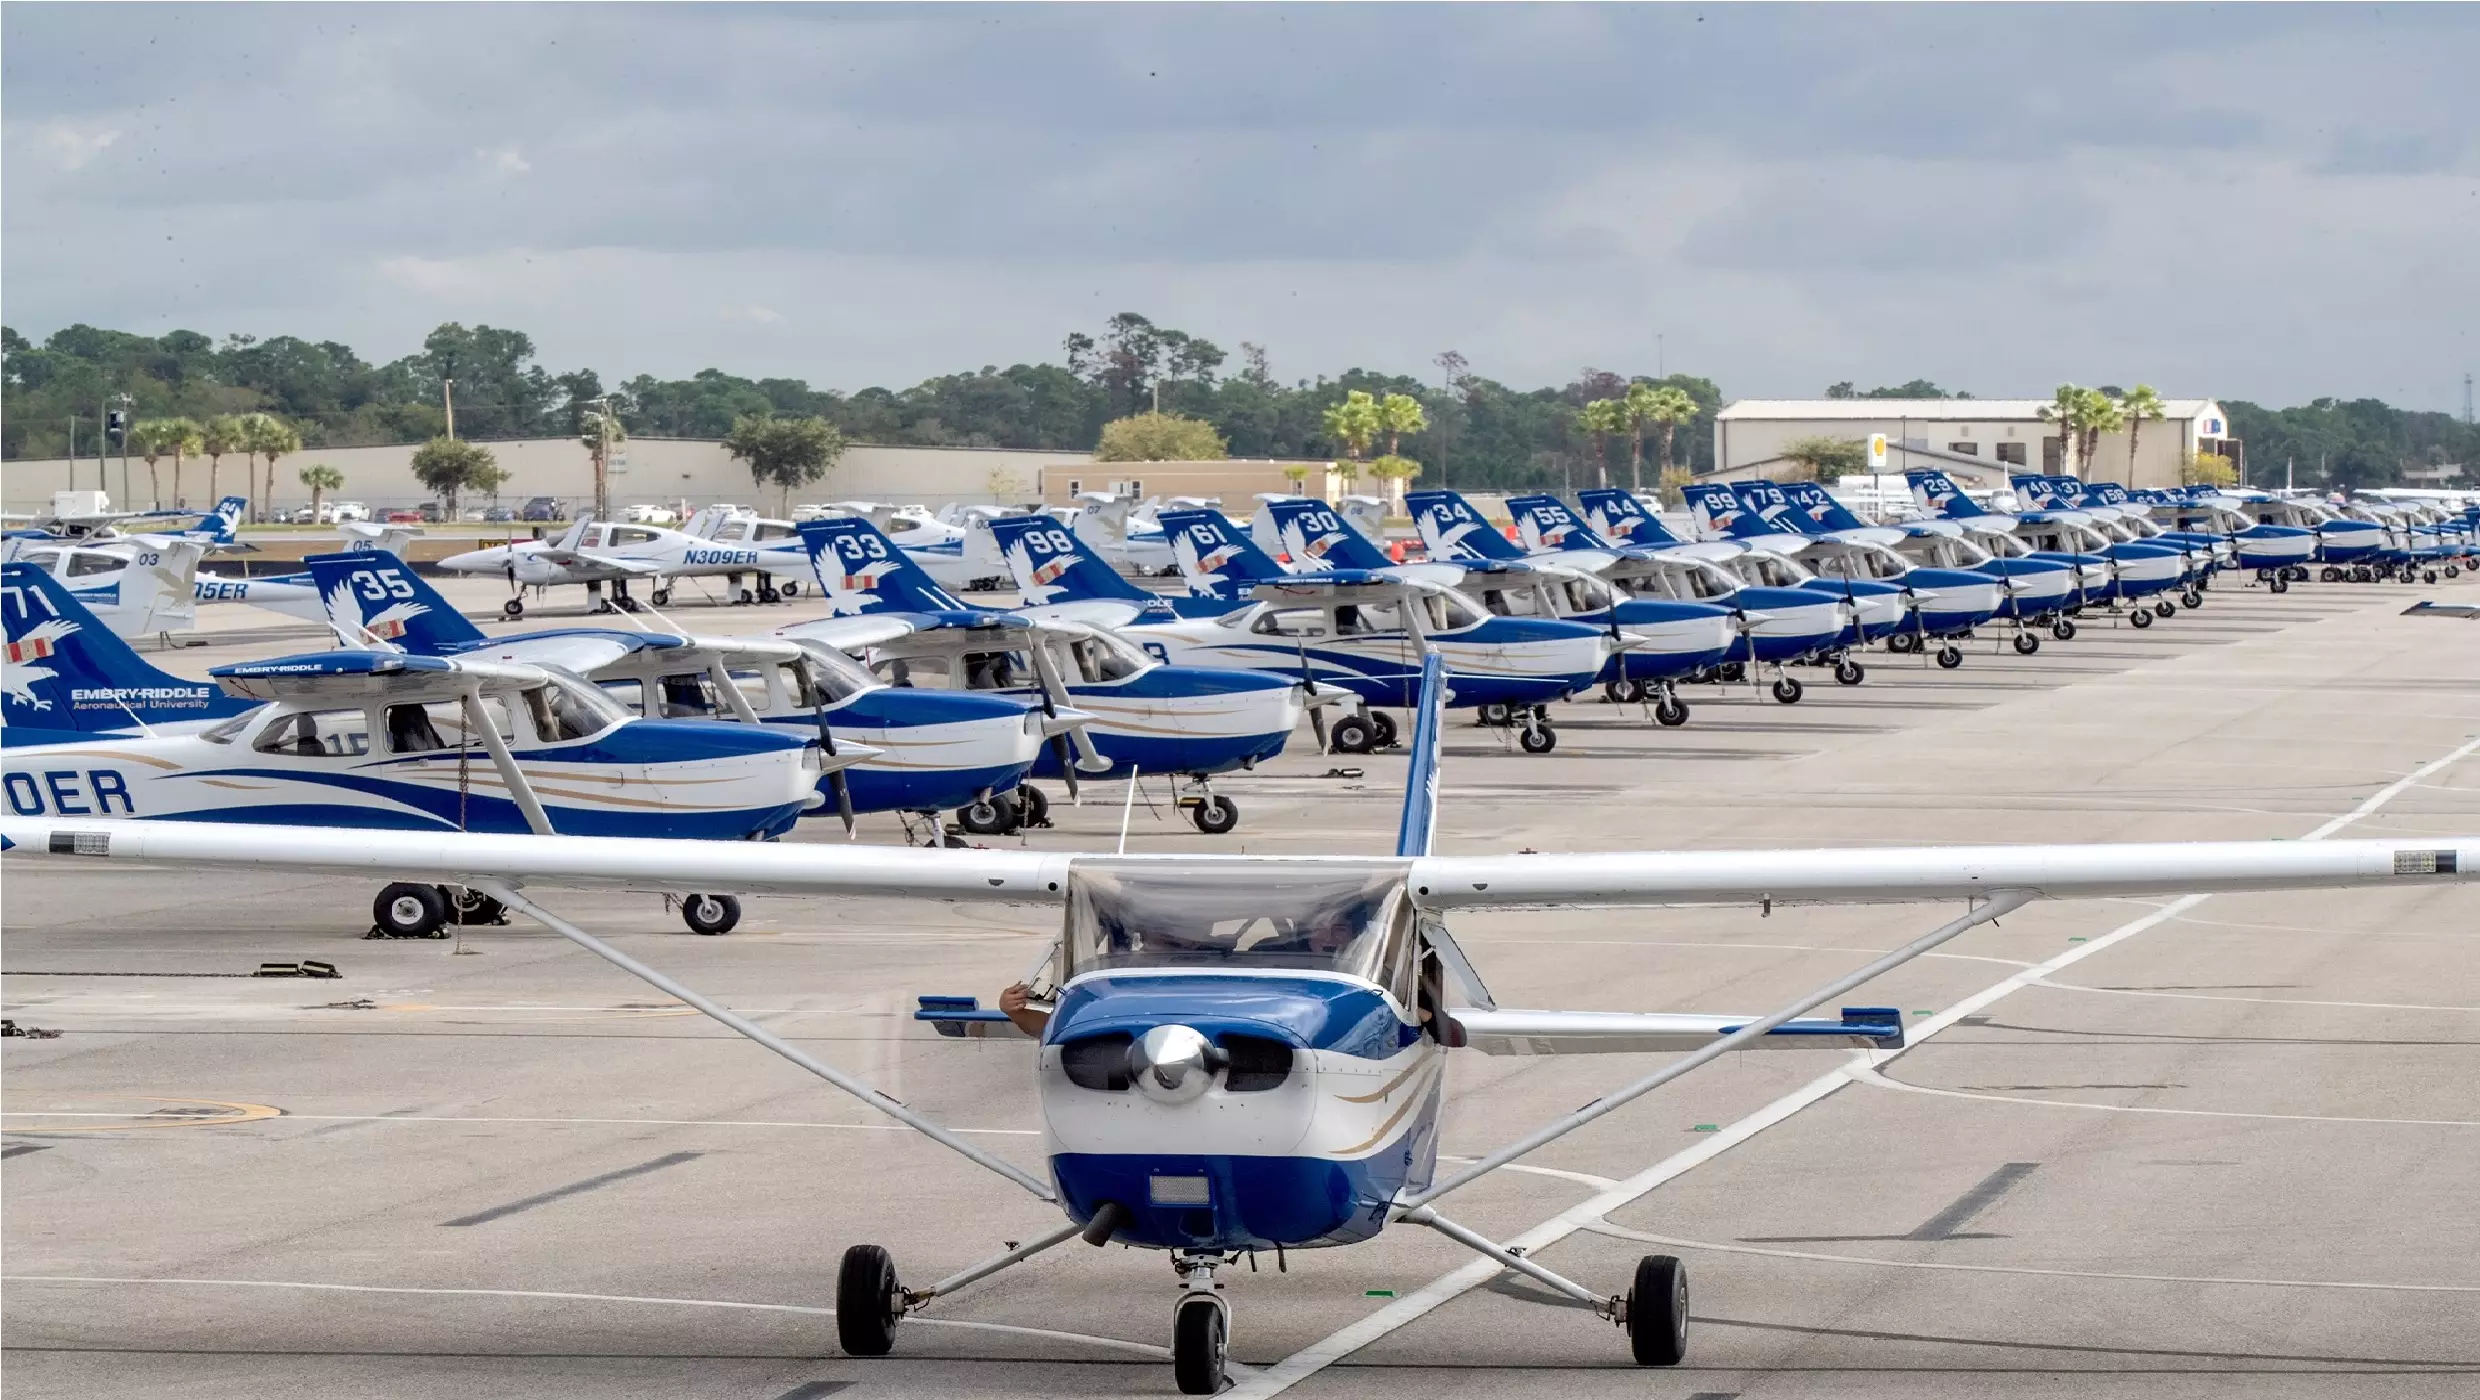 جامعة امبري ريدل للطيران – دايتونا بيتش Embry Riddle Aeronautical University – Daytona Beach